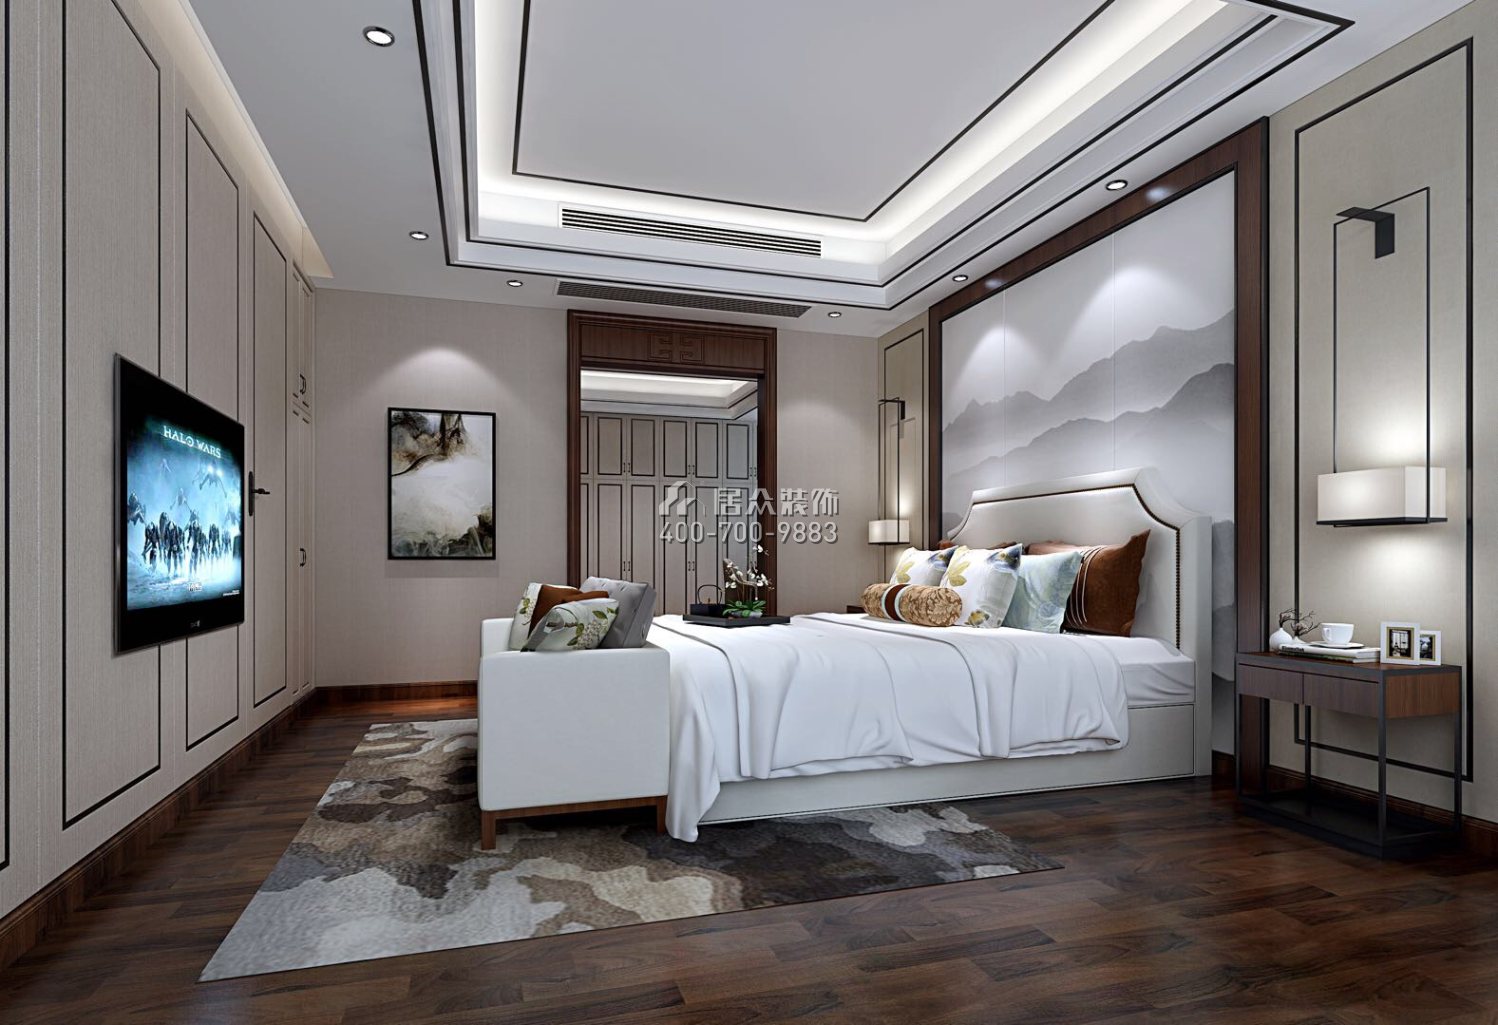 御水豪庭260平方米中式风格复式户型卧室装修效果图